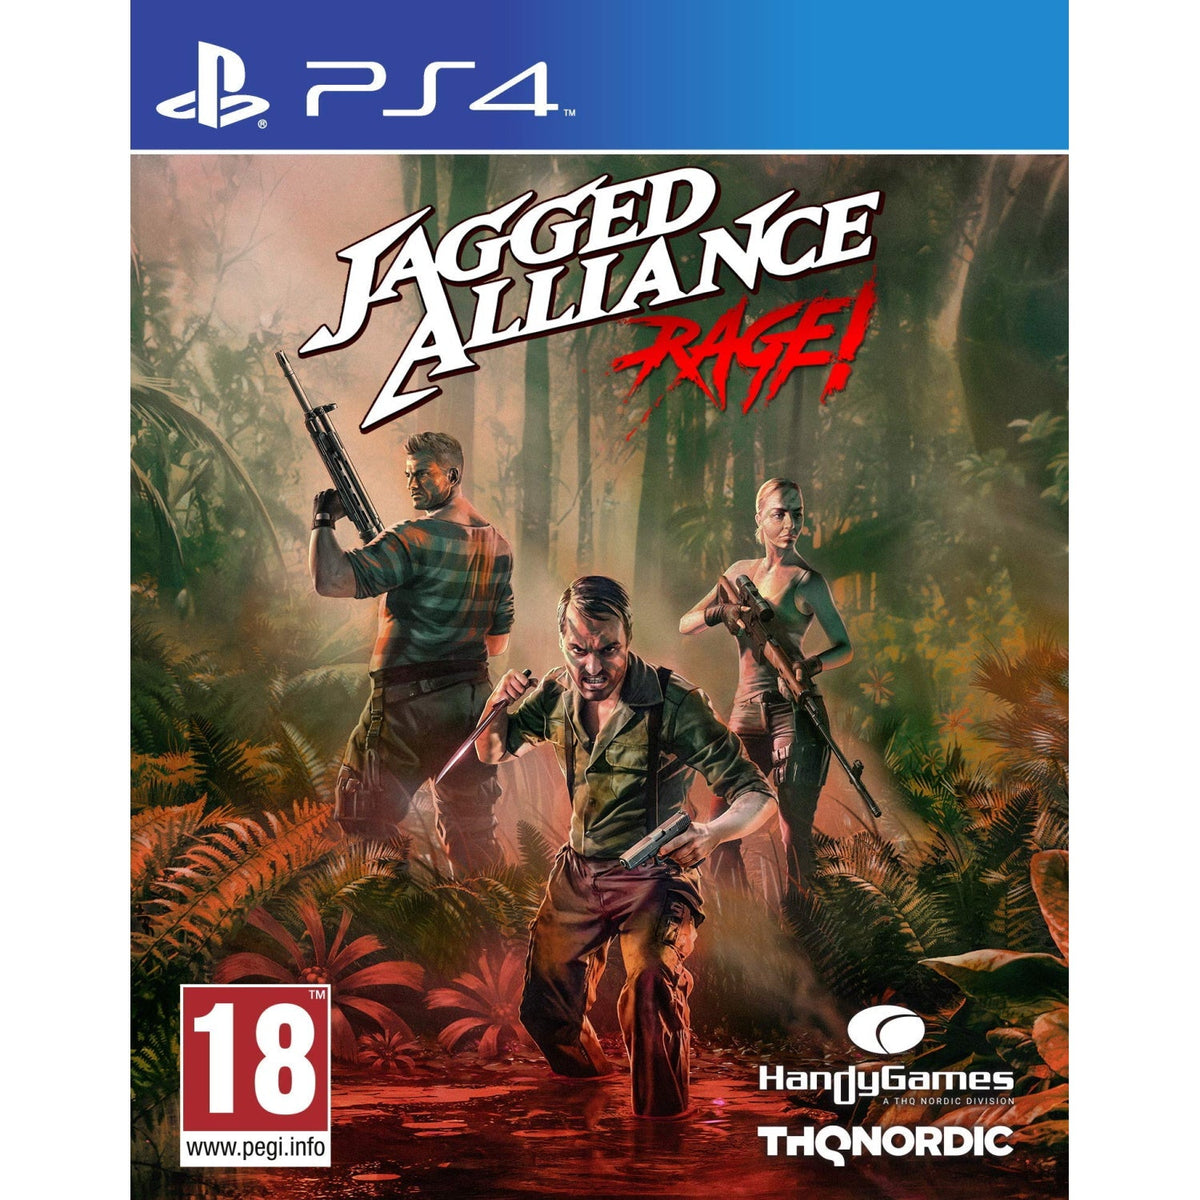 Jogo Rage 2 PS4 Bethesda com o Melhor Preço é no Zoom